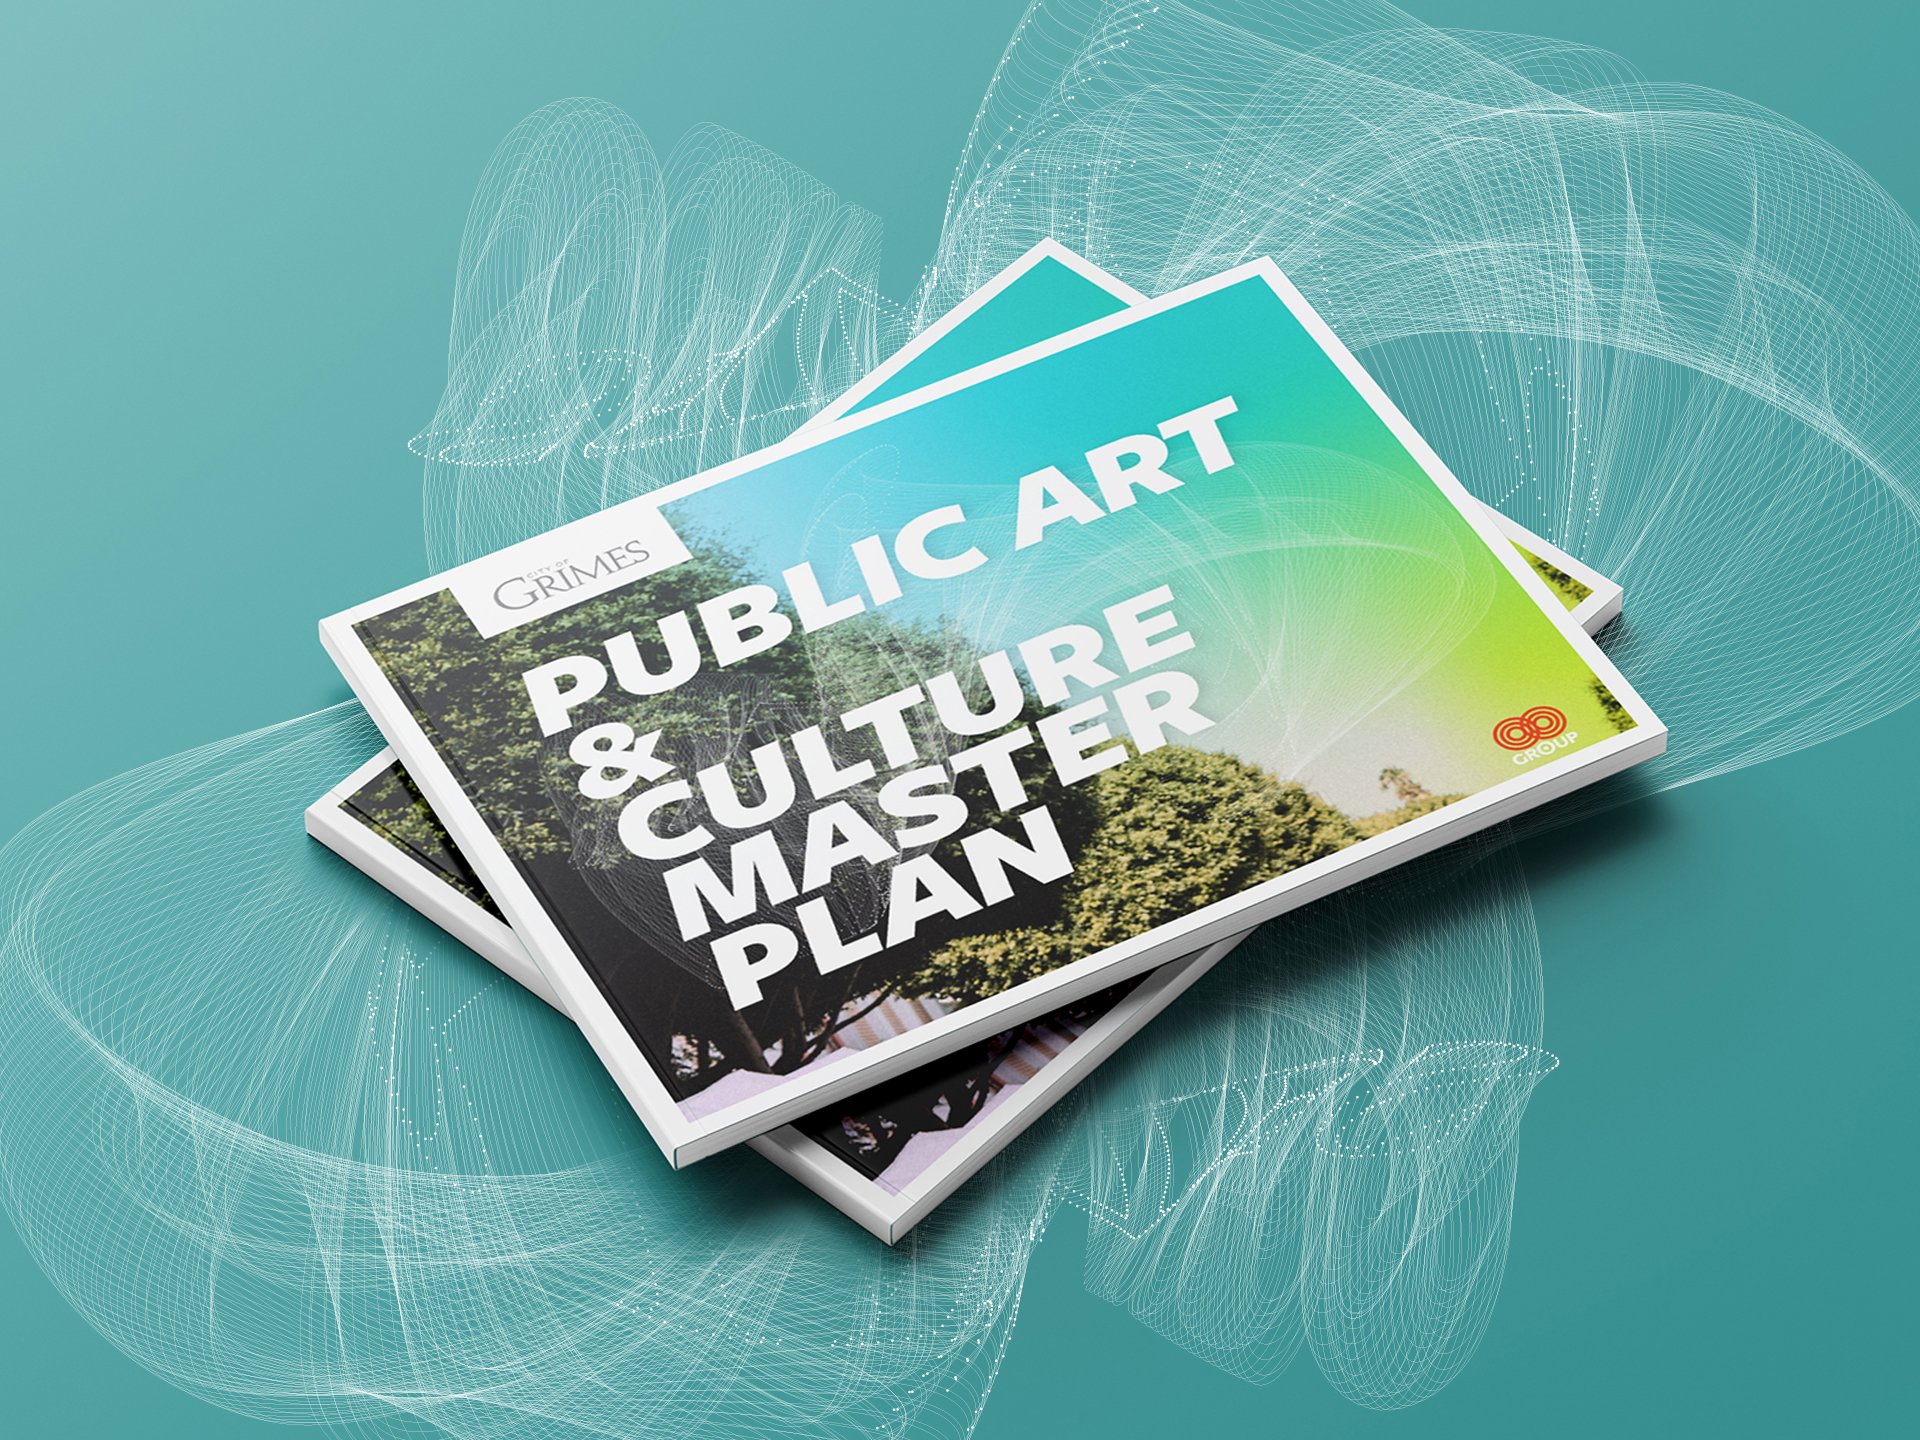 Public Art & Culture Master Plan - Grimes, IA